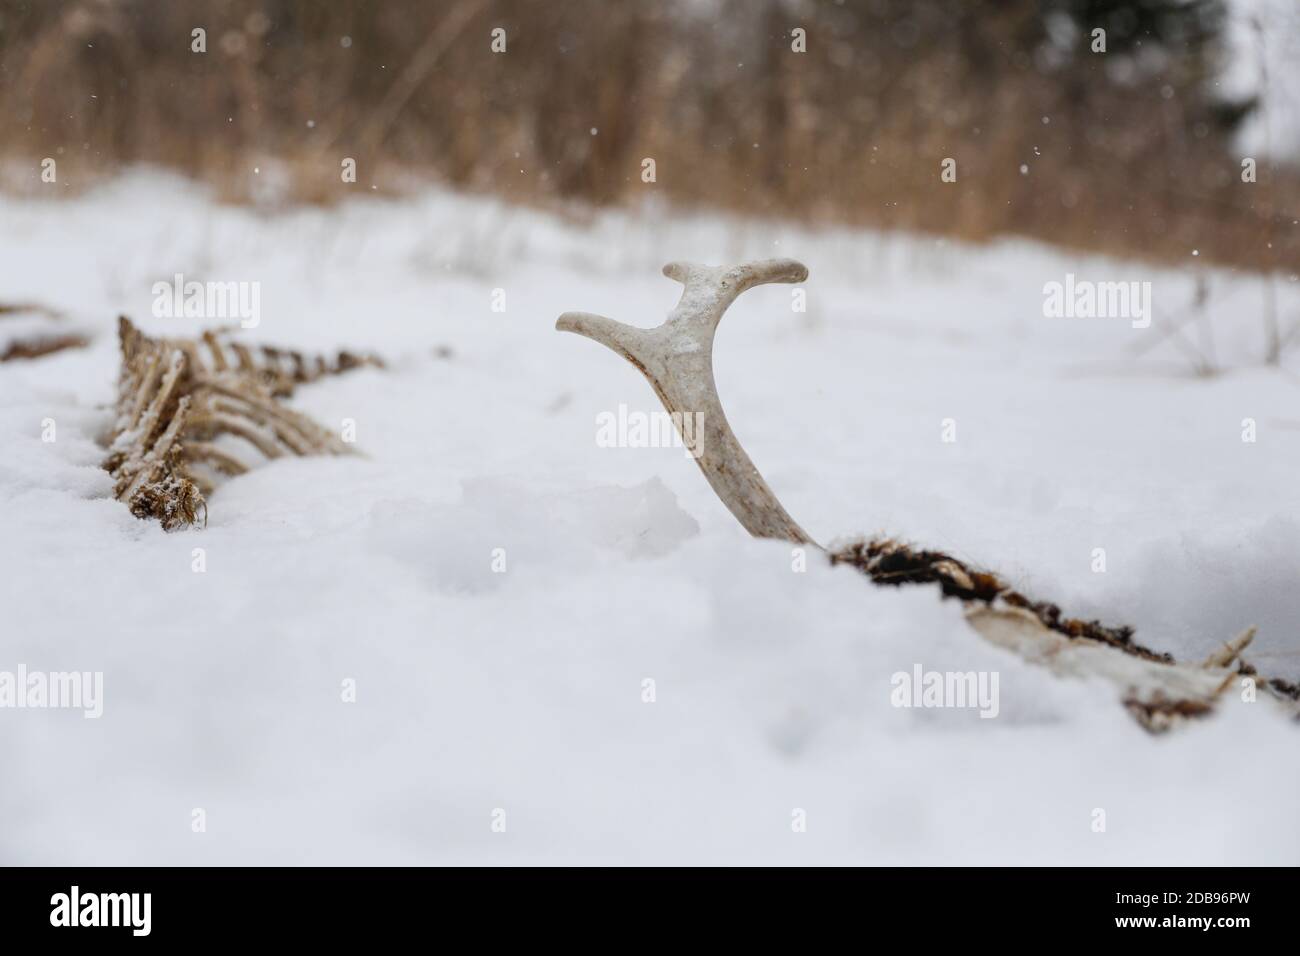 White-tailed deerÃ‚Â (Odocoileus virginianus)Ã‚Â buck skeleton under snow Stock Photo